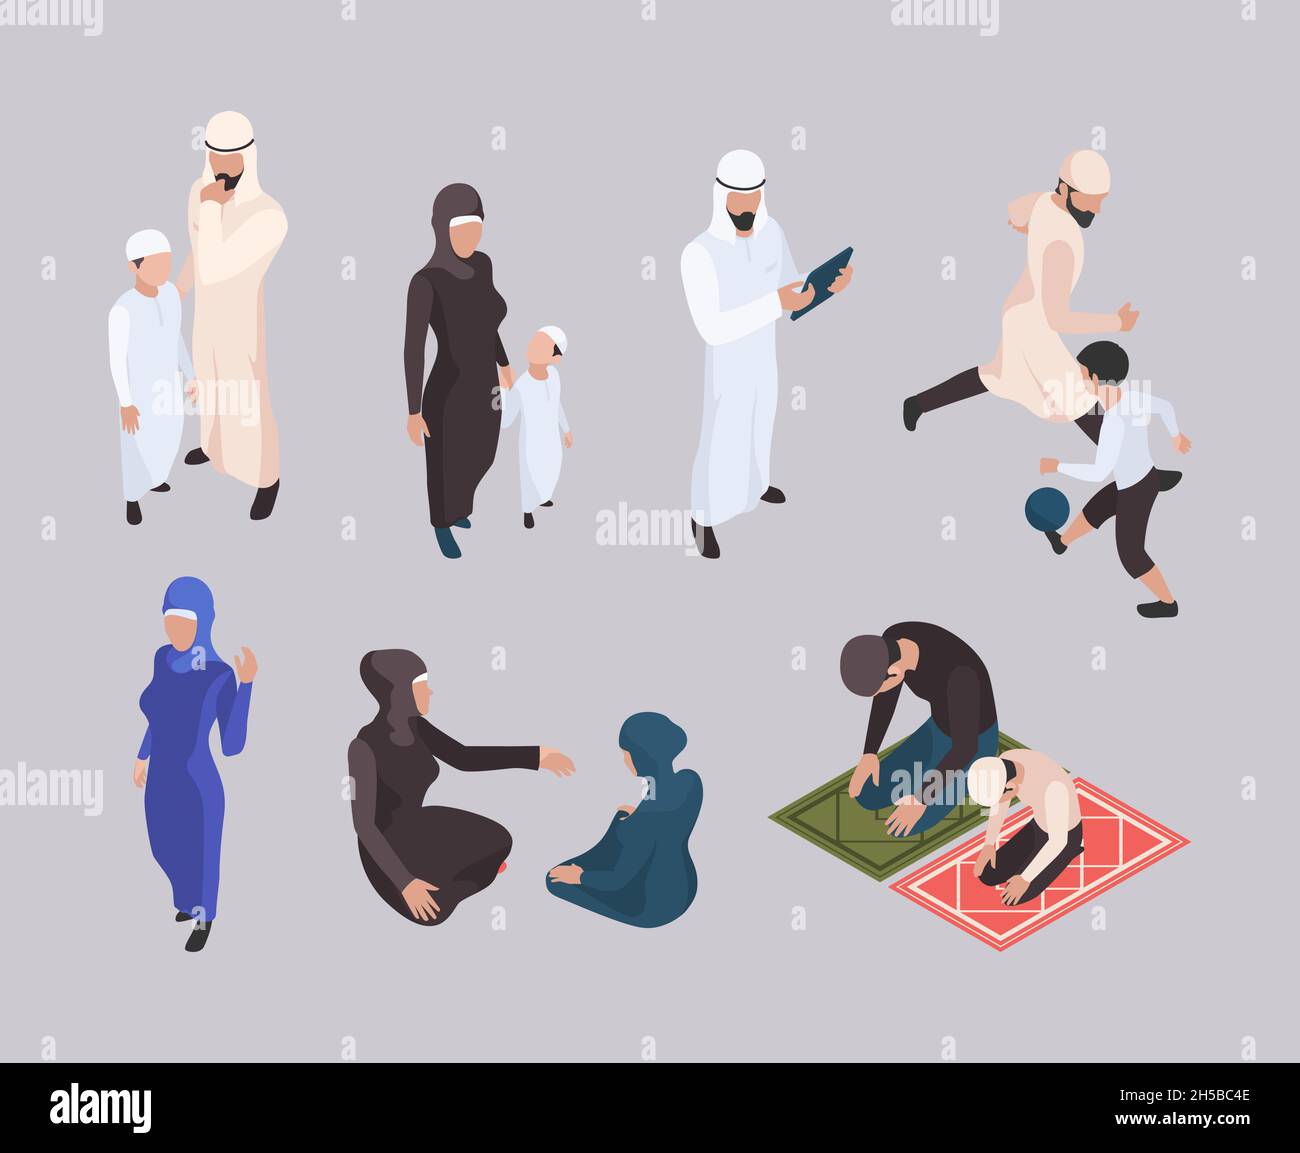 Famiglia araba. La gente orientale isometrica in hijab abiti musulmani tradizionali garish vettore persone Illustrazione Vettoriale